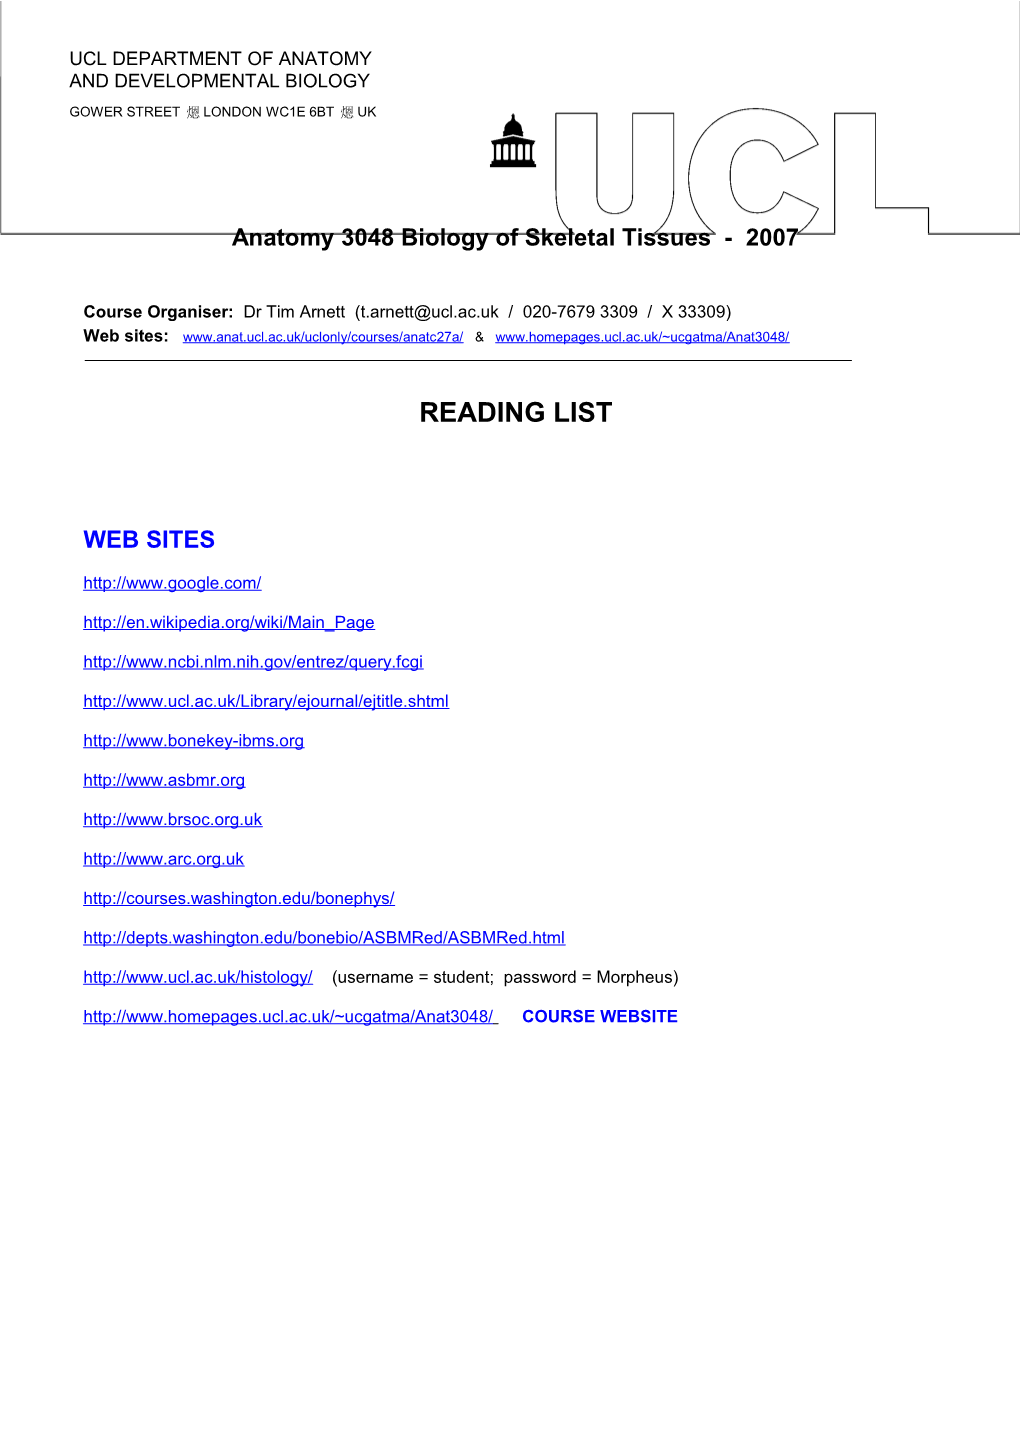 Anatomy 3048 Biology of Skeletal Tissues - 2007